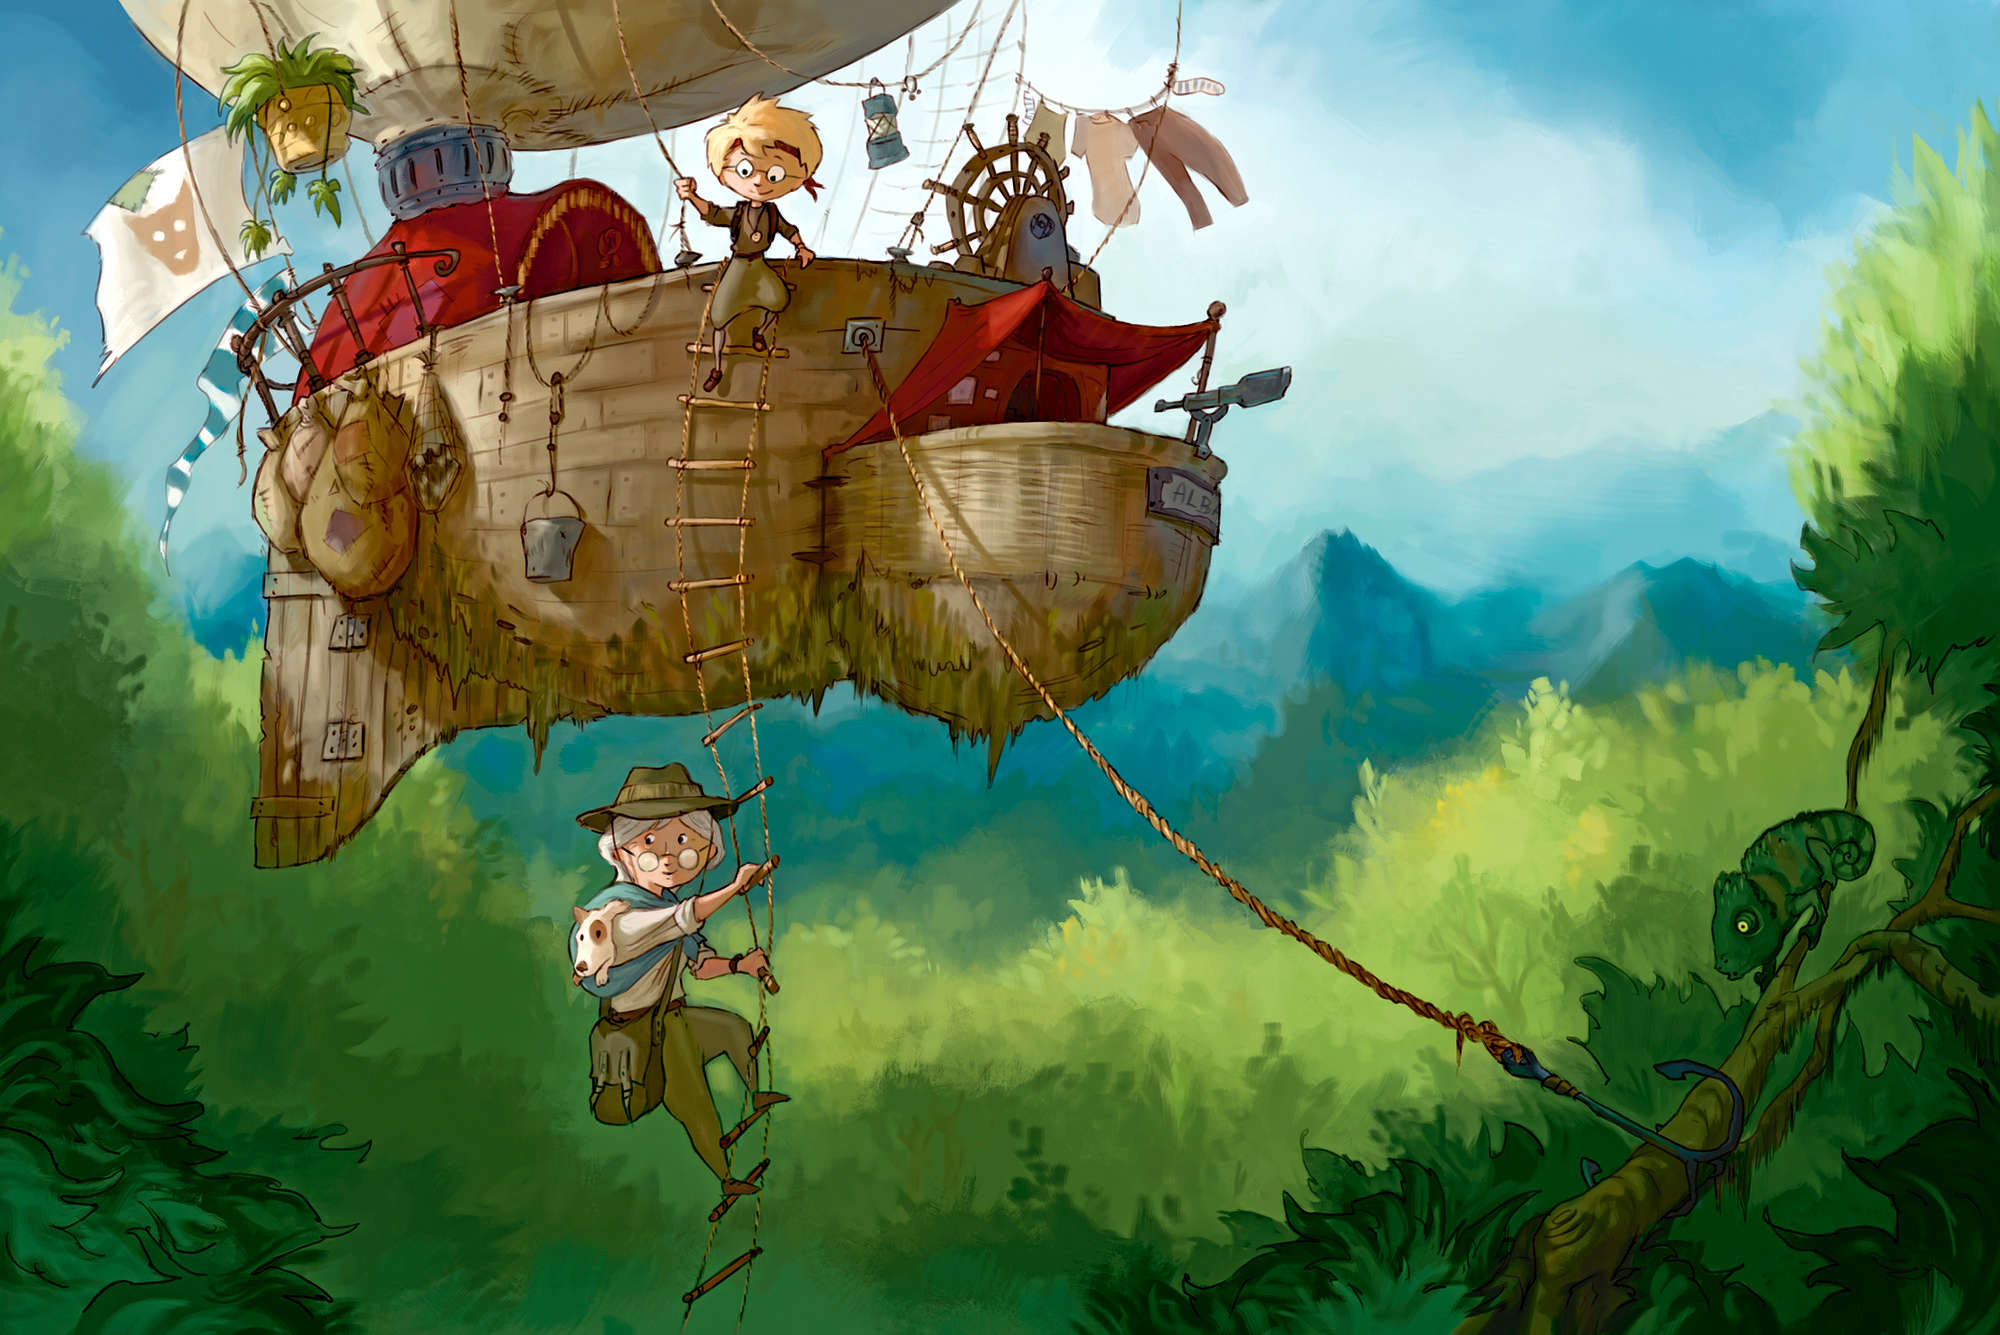             Kindermuurschildering Avonturier met vliegend schip op structuurvinyl
        